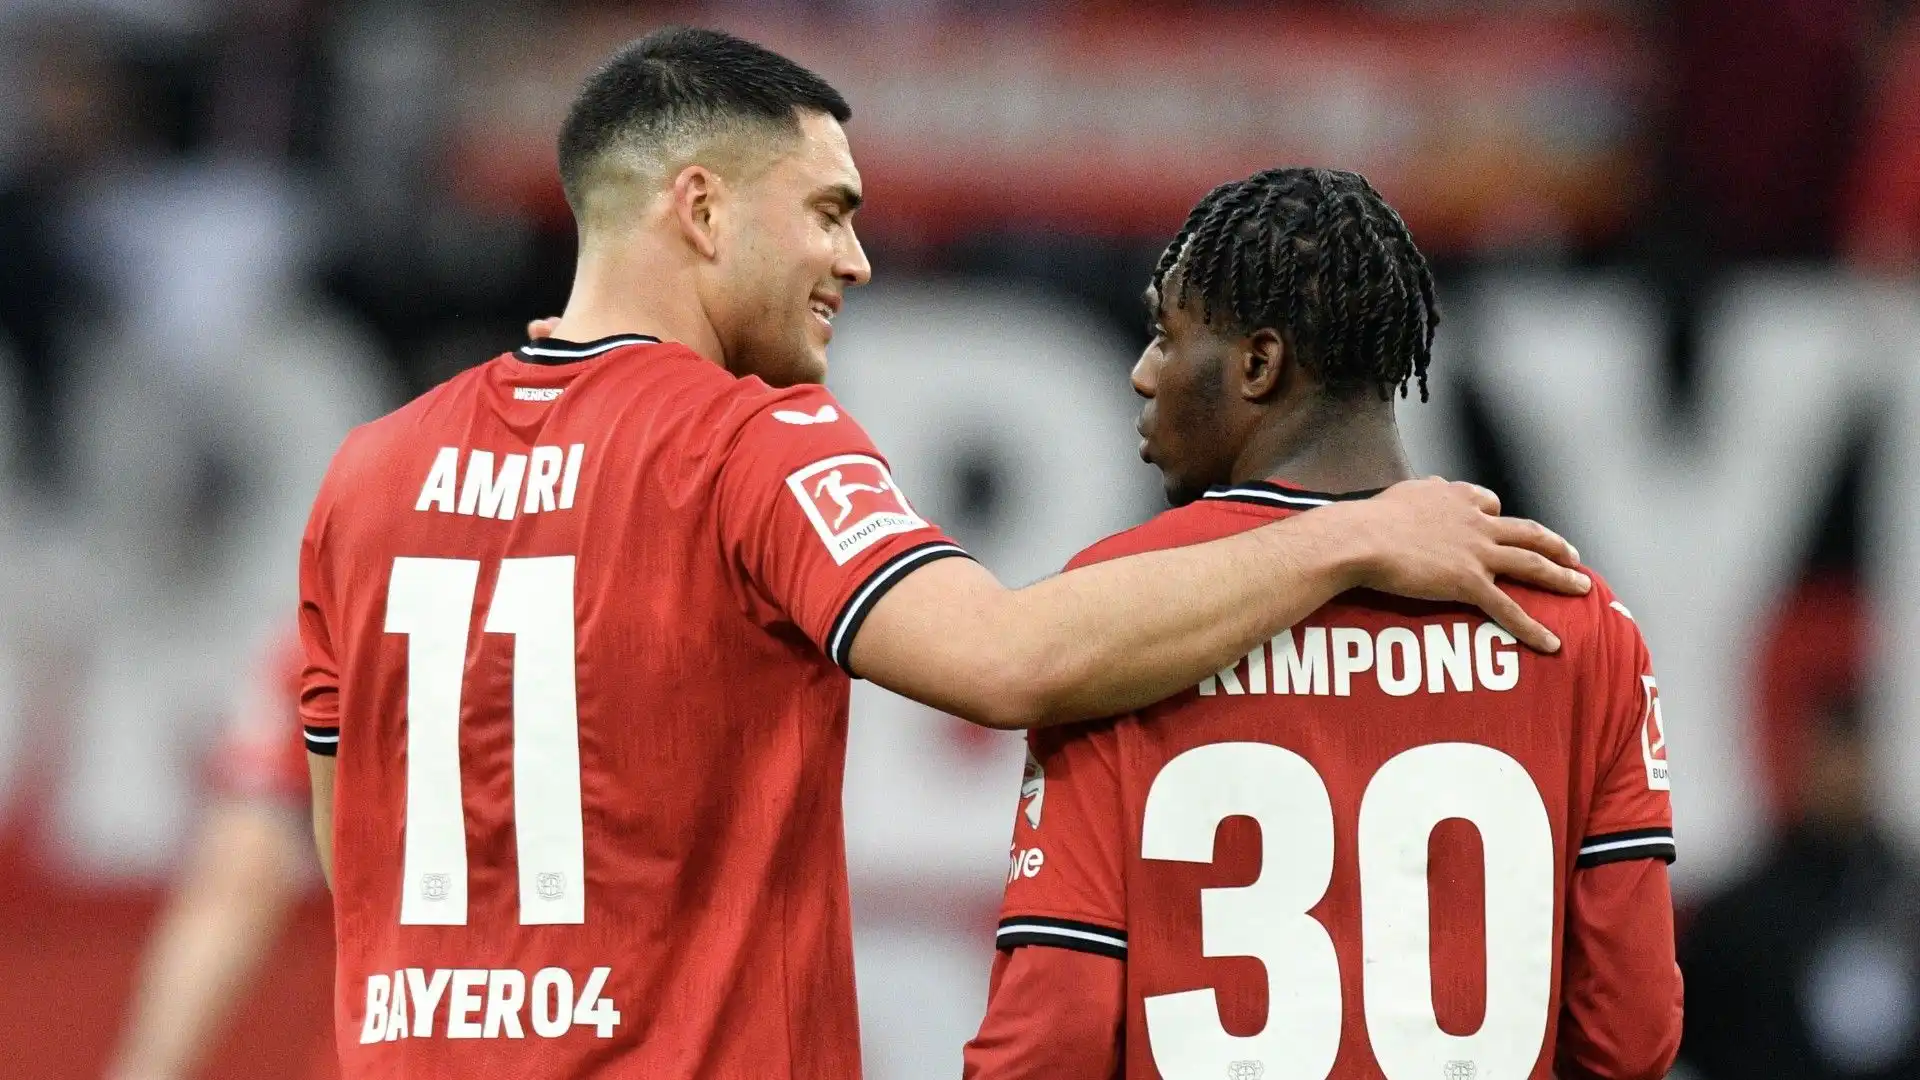 Il Bayer Leverkusen vorrebbe trattenere Jeremie Frimpong: vedremo se il Manchester United riuscirà a ingaggiare il difensore